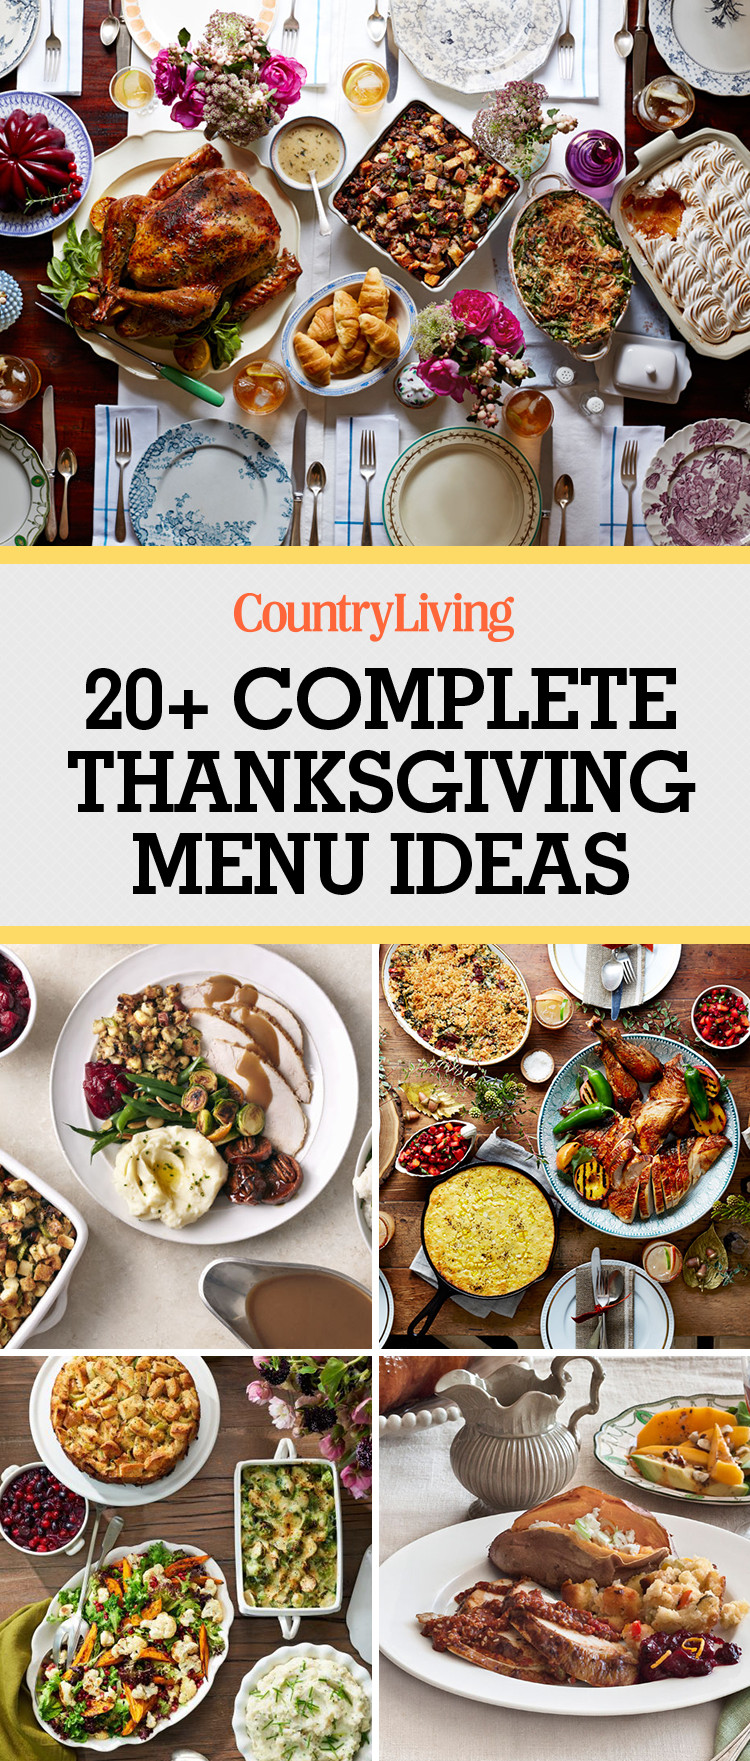 Thanksgiving Breakfast Menus
 26 Thanksgiving Menu Ideas Thanksgiving Dinner Menu Recipes